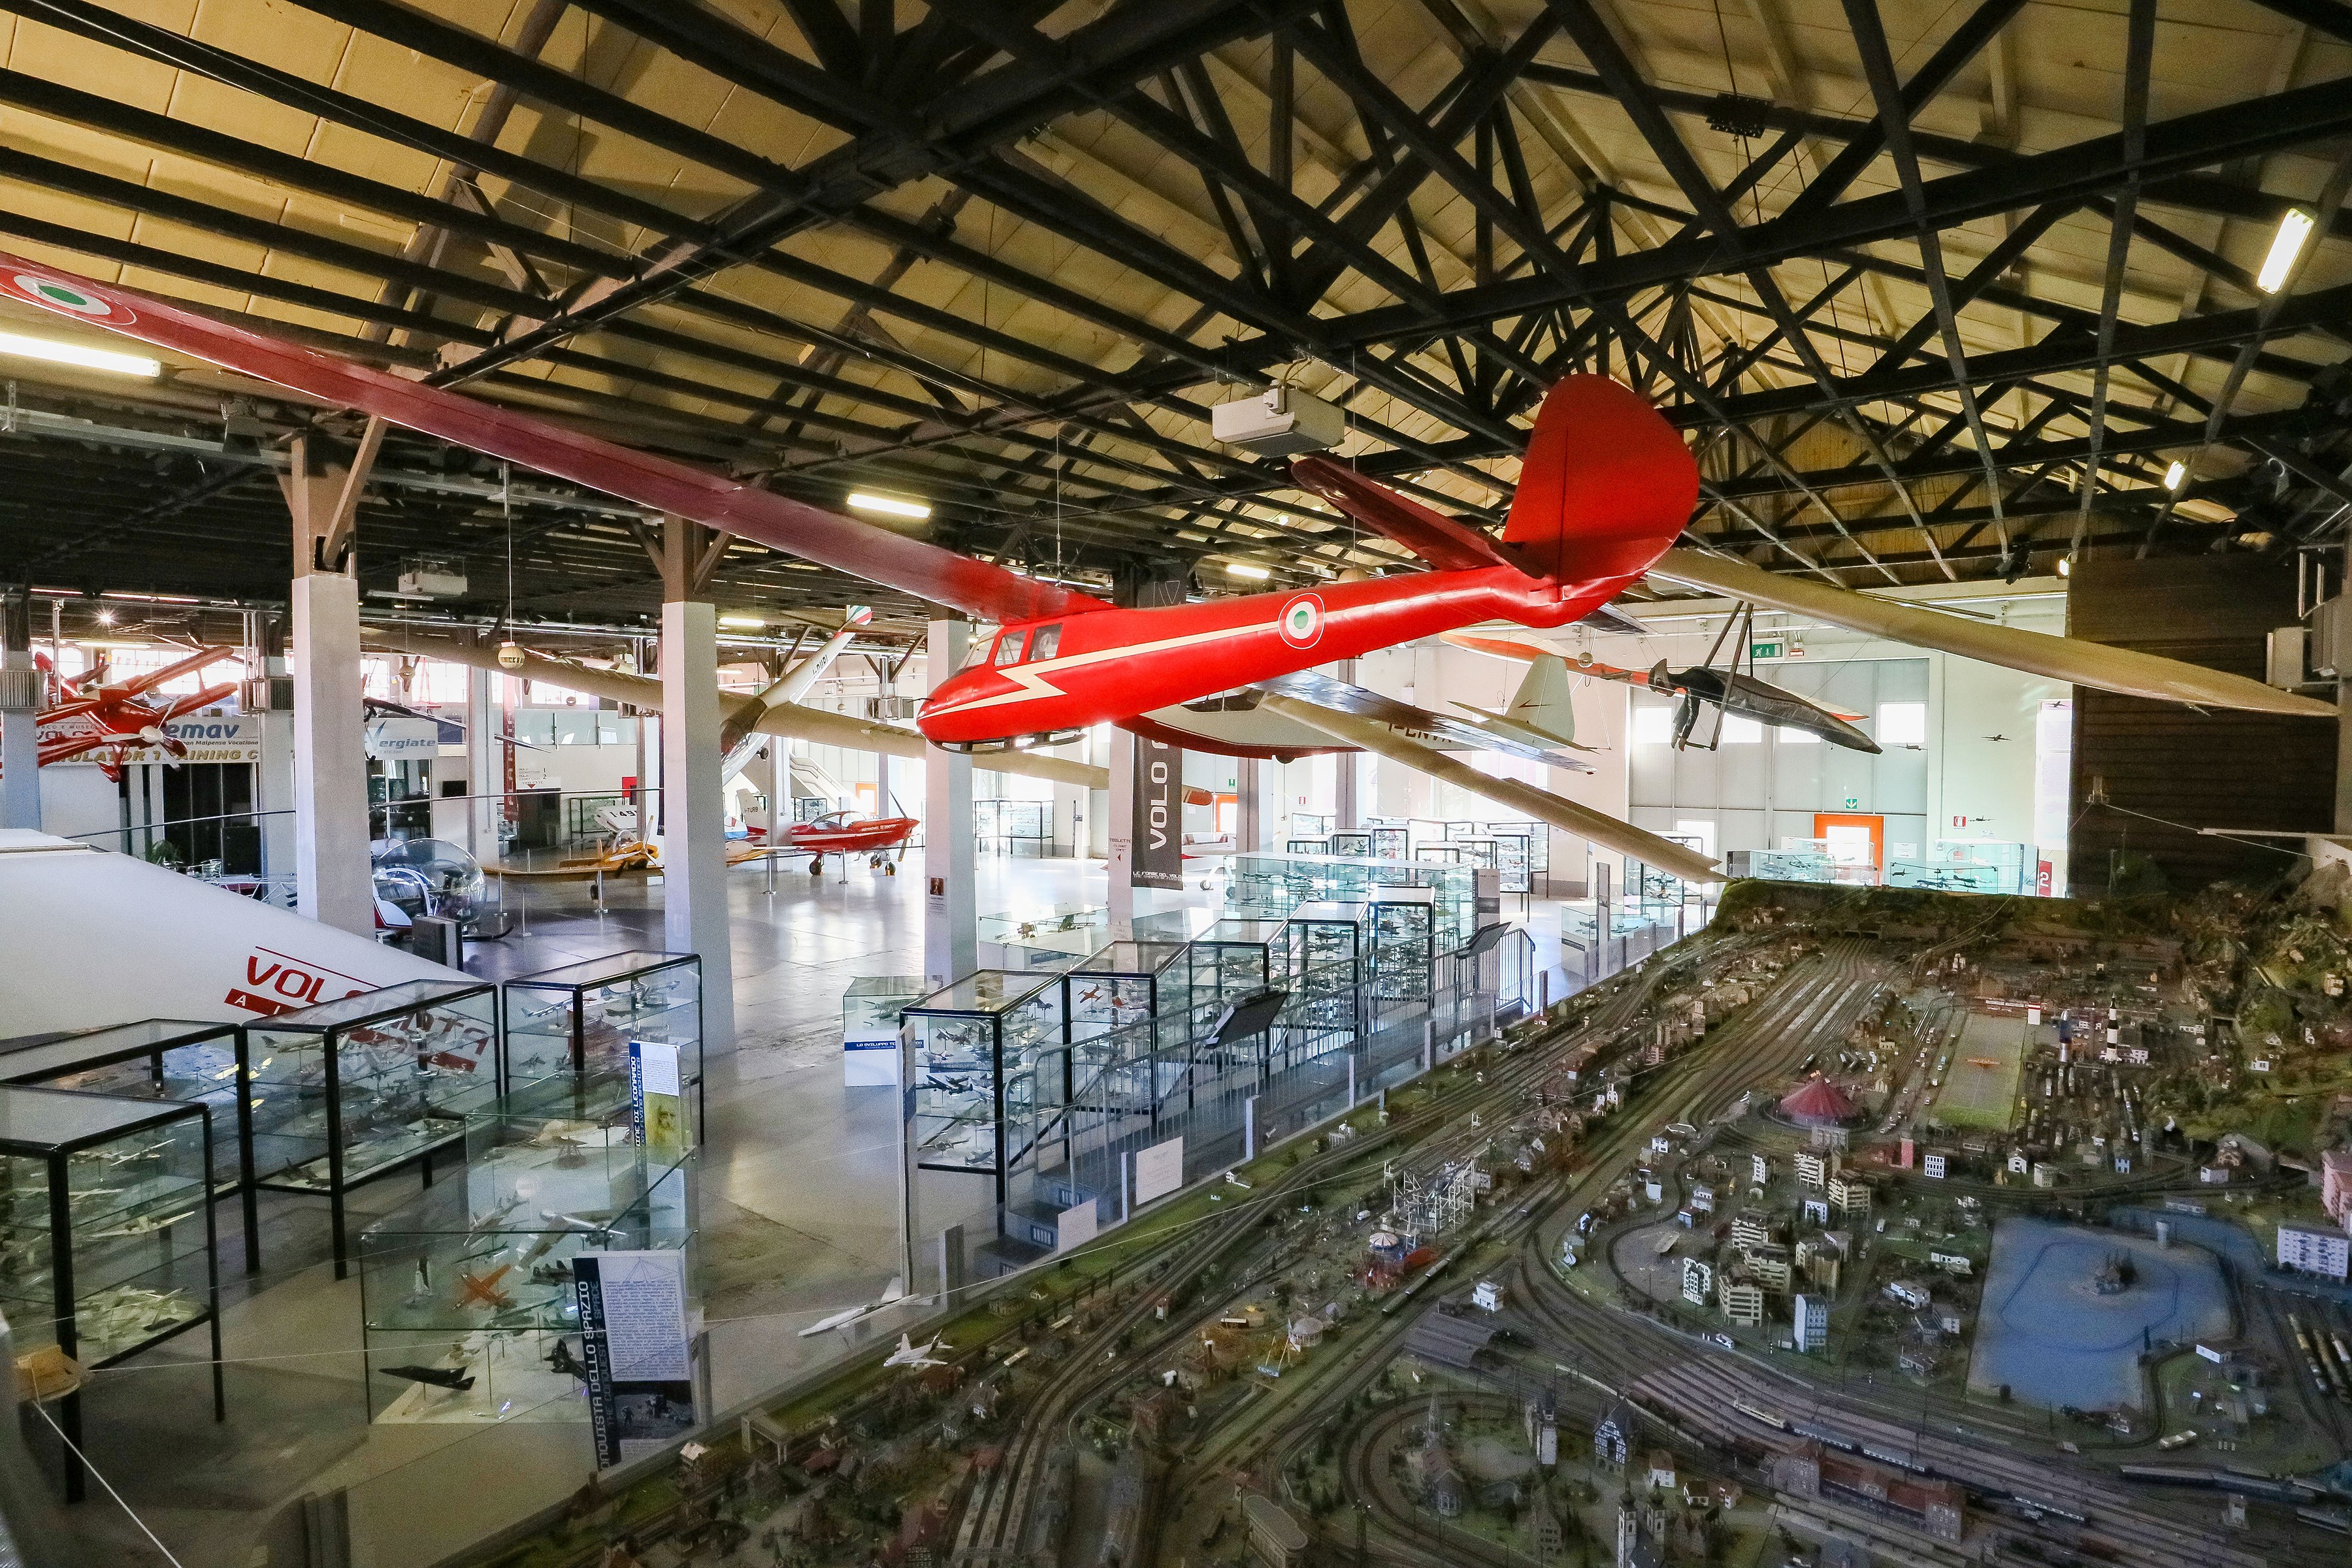 『紅の豚』『風立ちぬ』の世界の中でベルトーネデザインに浸る【第8回 ヴォランディア飛行機博物館】